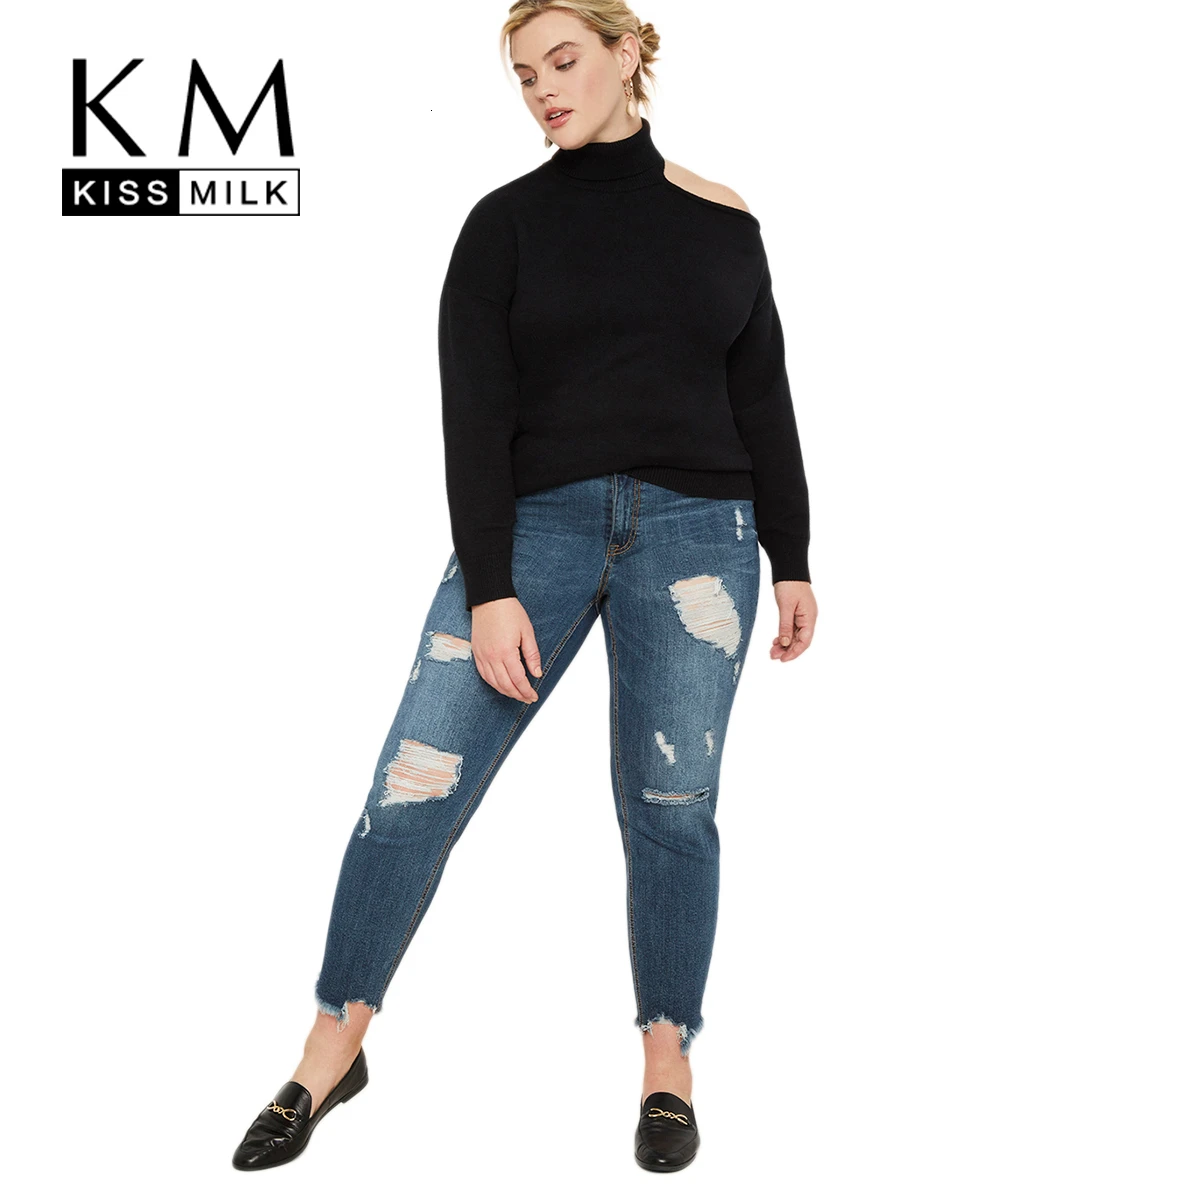 Kissmilk/женская одежда больших размеров односторонний трикотажный пуловер с